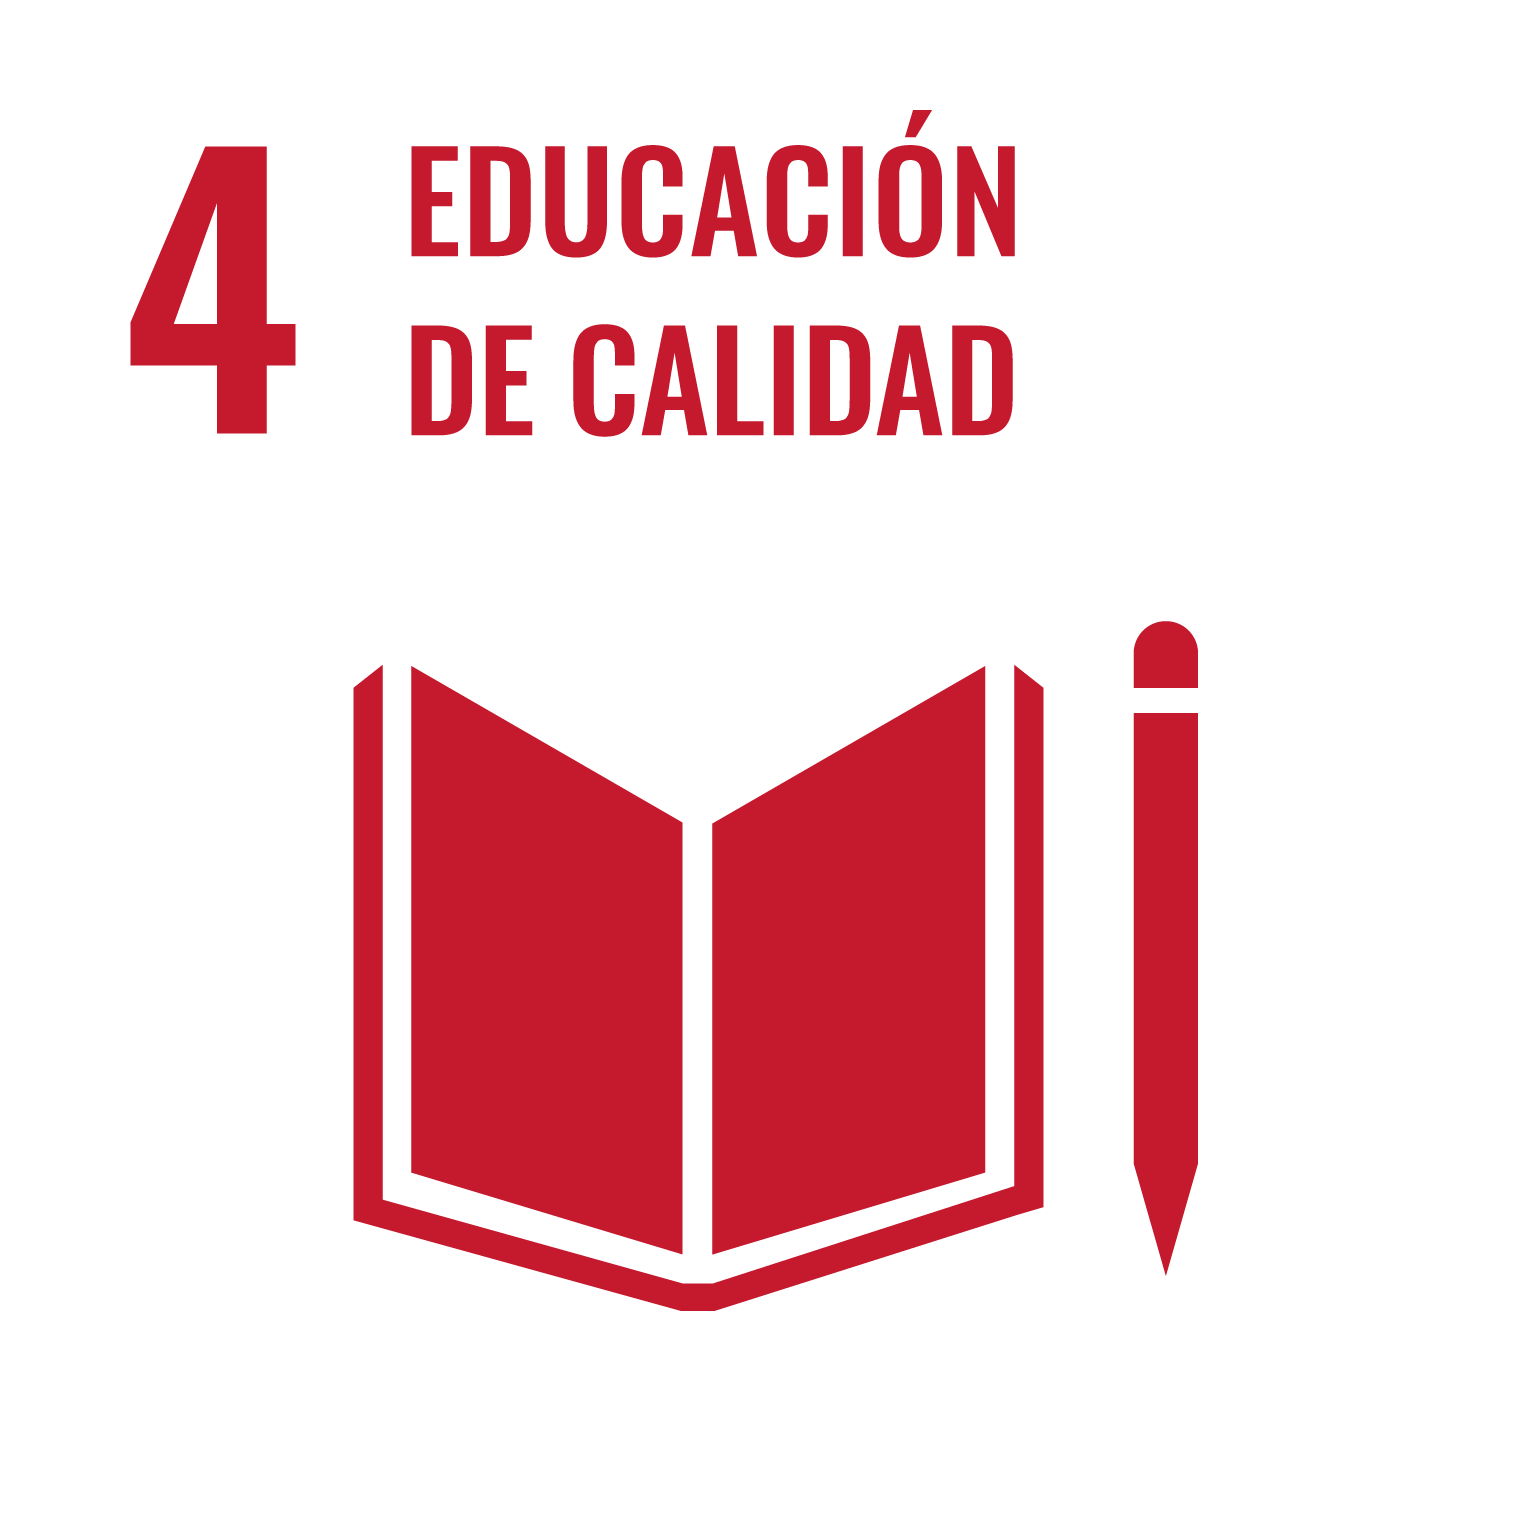 Dimension - Objetivo 4. Garantizar una educación inclusiva, equitativa y de calidad y promover oportunidades de aprendizaje durante toda la vida para todos